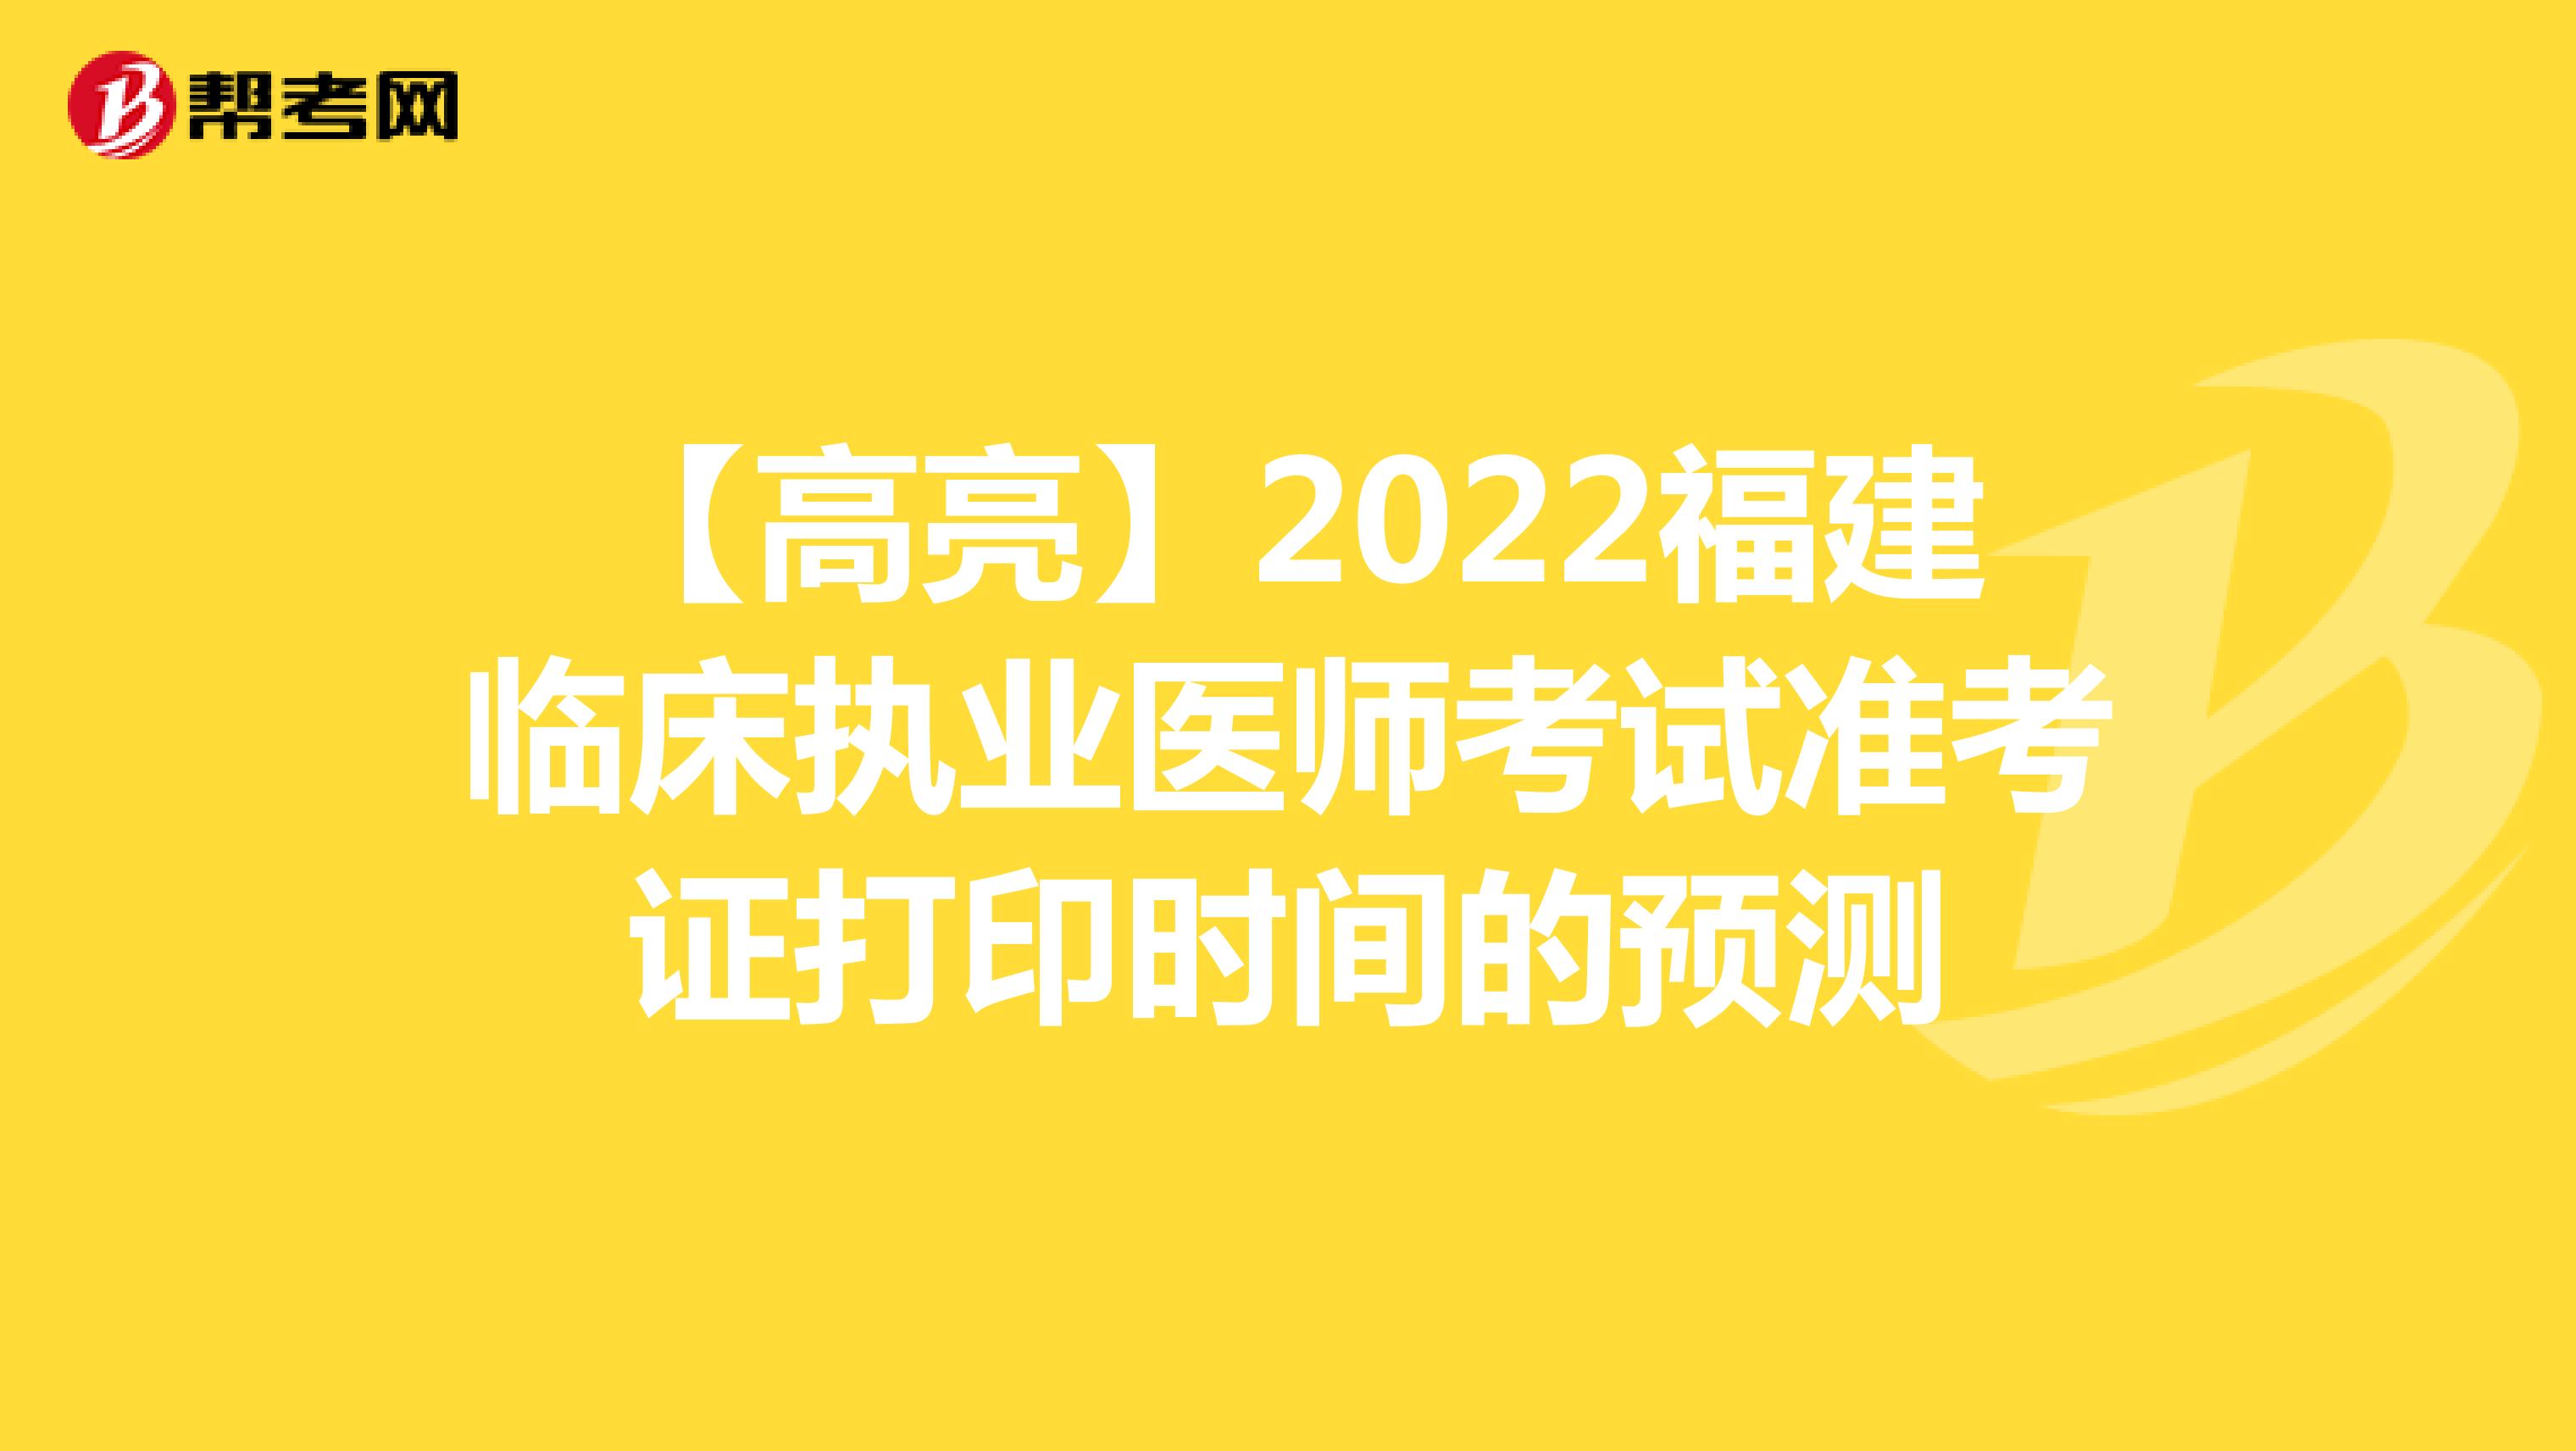 【高亮】2022福建临床执业医师考试准考证打印时间的预测